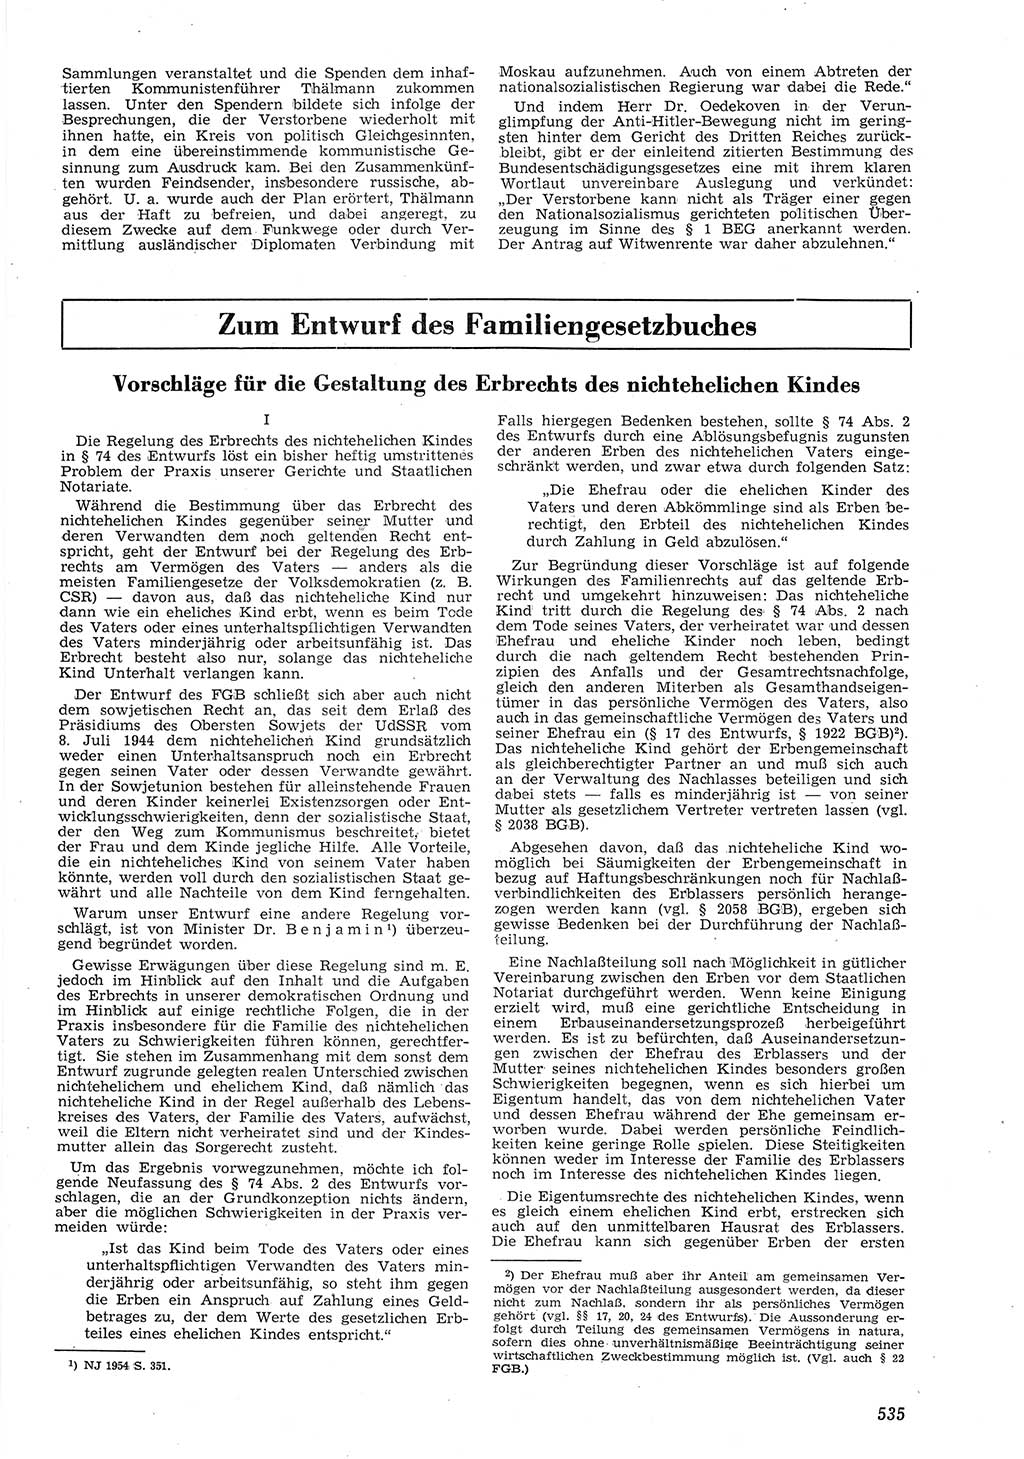 Neue Justiz (NJ), Zeitschrift für Recht und Rechtswissenschaft [Deutsche Demokratische Republik (DDR)], 8. Jahrgang 1954, Seite 535 (NJ DDR 1954, S. 535)